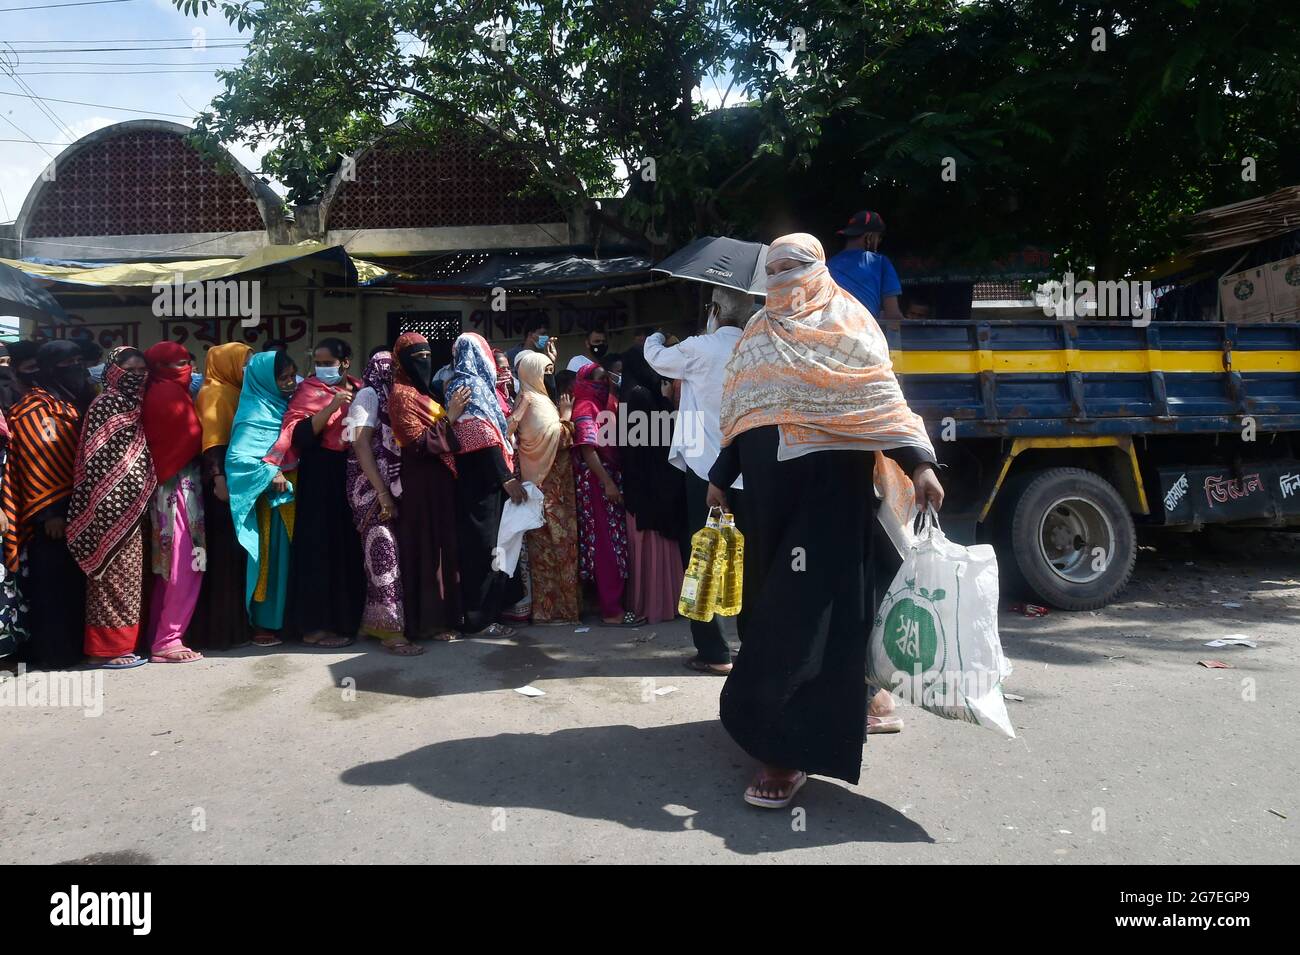 Dhaka. Juli 2021. Eine Frau verlässt das Geschäft, nachdem sie am 13. Juli 2021 in einem von der Regierung betriebenen, preisgünstigen Mobilfunkgeschäft in Dhaka, Bangladesch, einkaufen ging. Die Regierung von Bangladesch hat fünf Pakete von 32 Milliarden Taka (etwa 372 Millionen US-Dollar) angekündigt, um einkommensschwachen Gruppen zu helfen, die von der Sperrung der COVID-19-Pandemie betroffen sind. Quelle: Xinhua/Alamy Live News Stockfoto